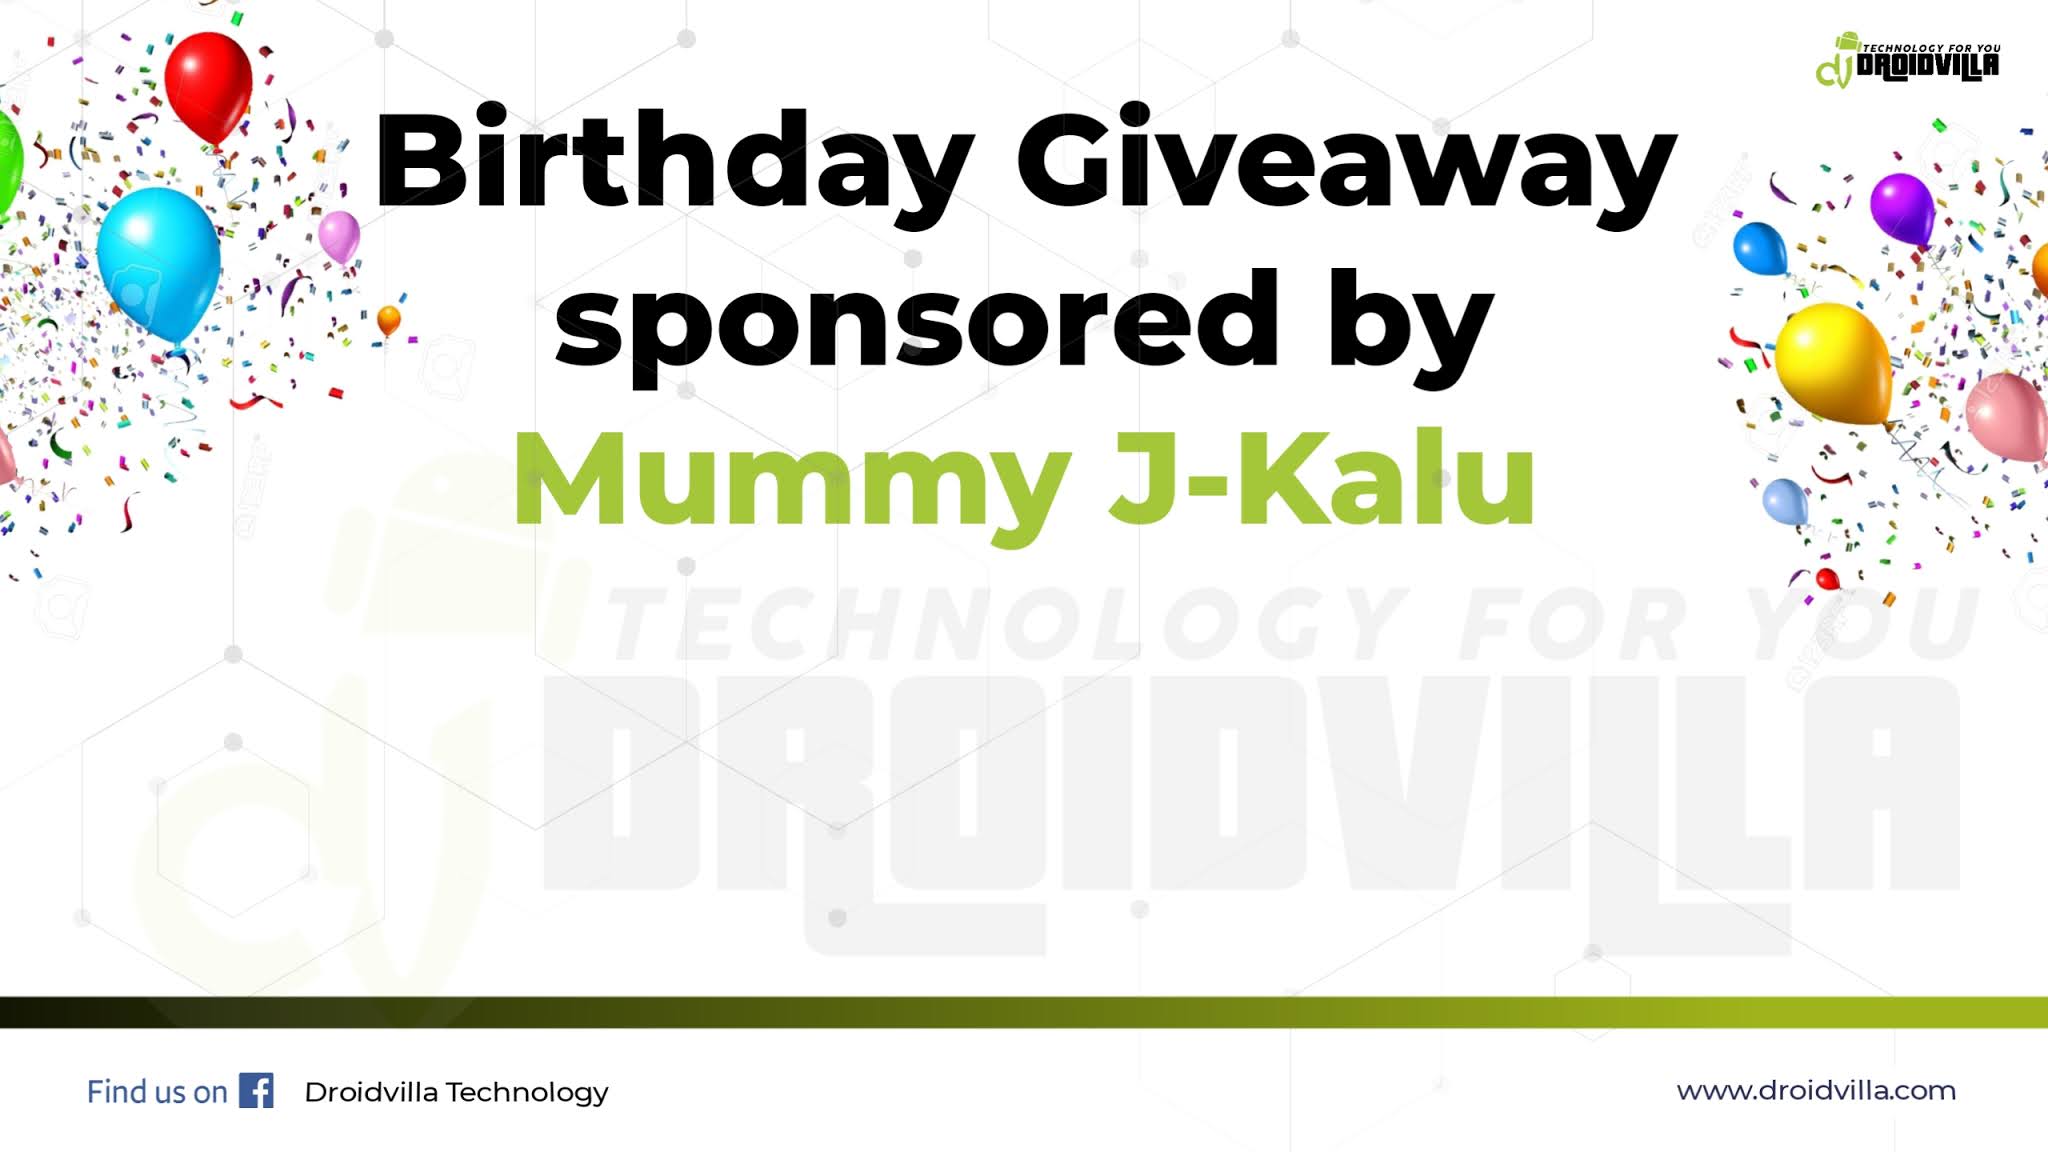 Birthday Giveaway sponsored by Mummy J - Kalu